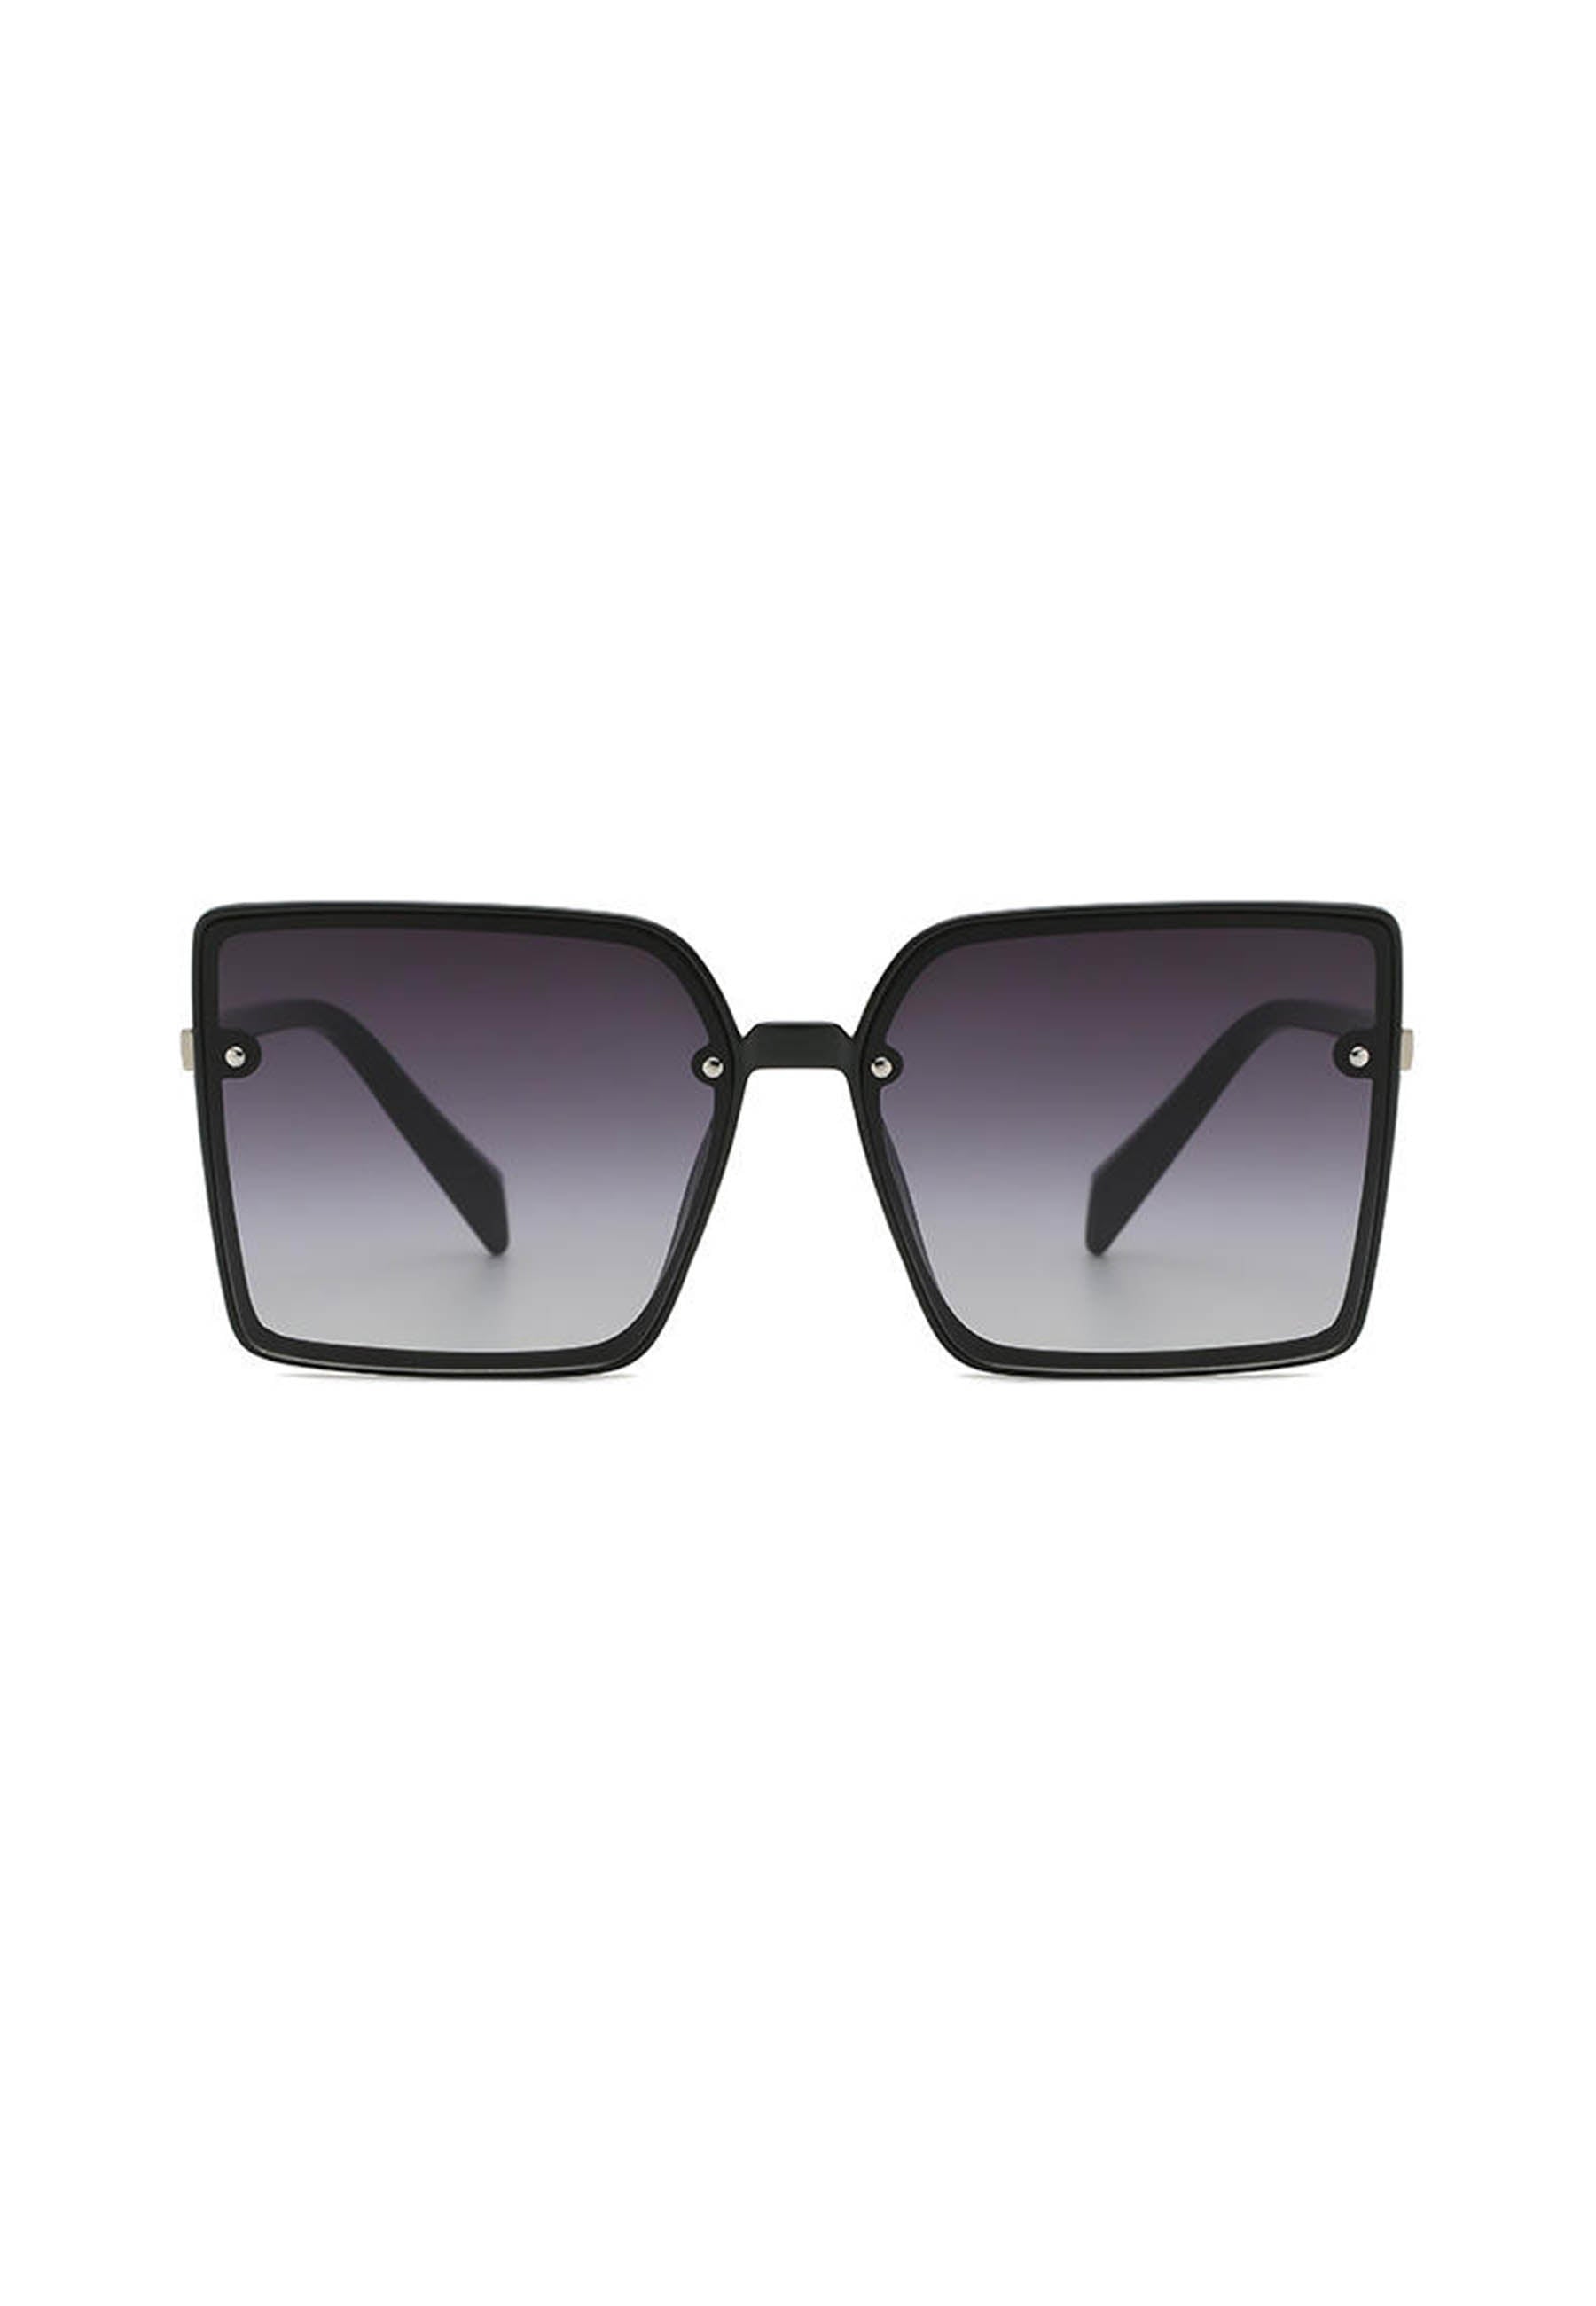 Quadratische, übergroße Sonnenbrille mit Farbverlauf